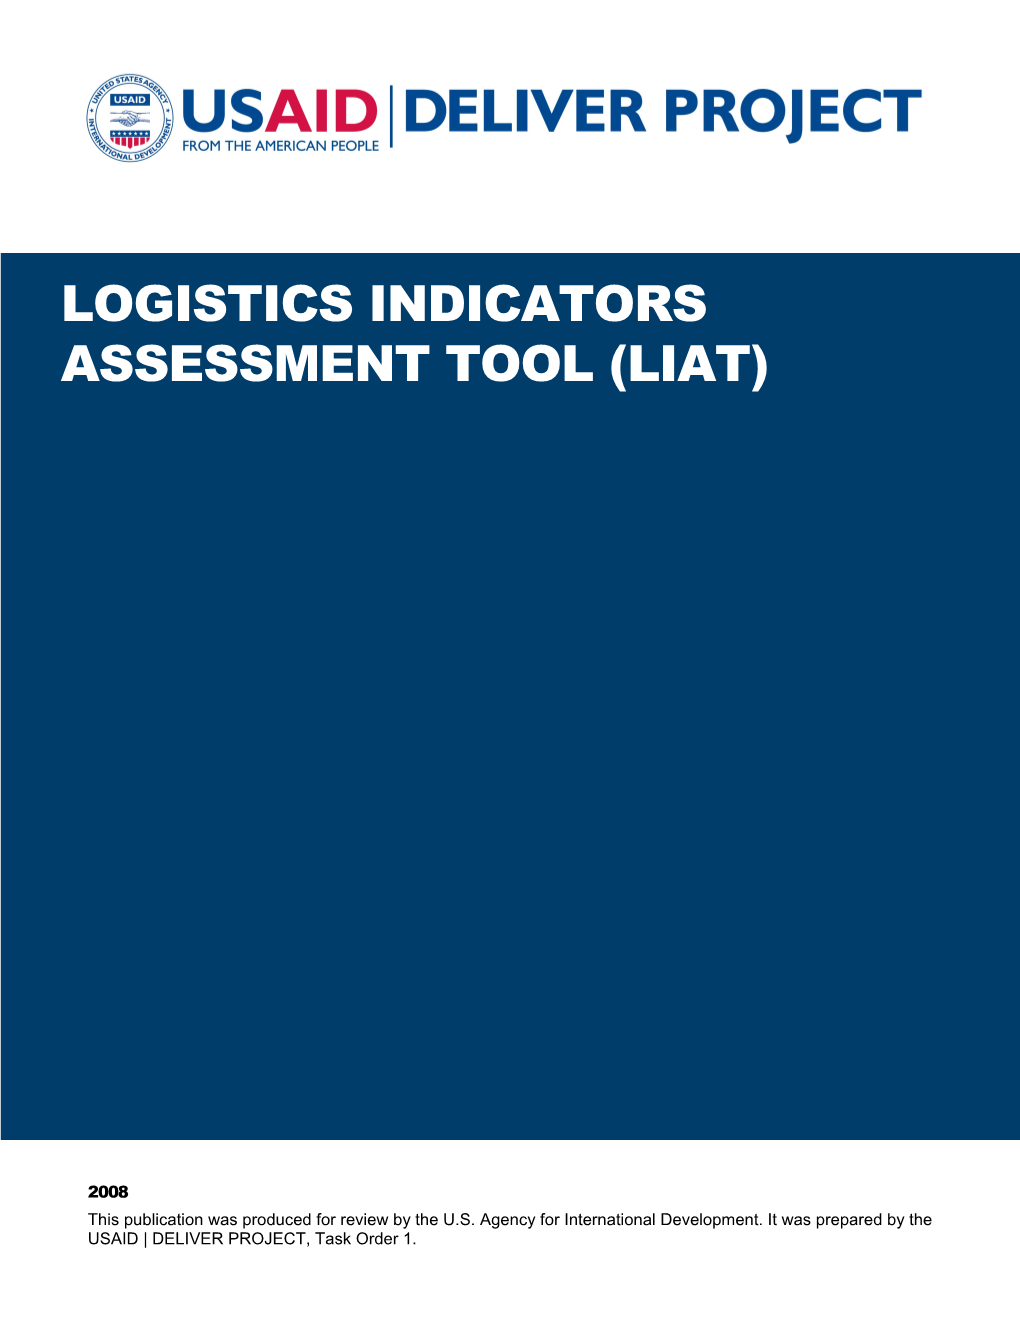 Logistics Indicators Assessment Tool (LIAT), (R5, Nov 2006)